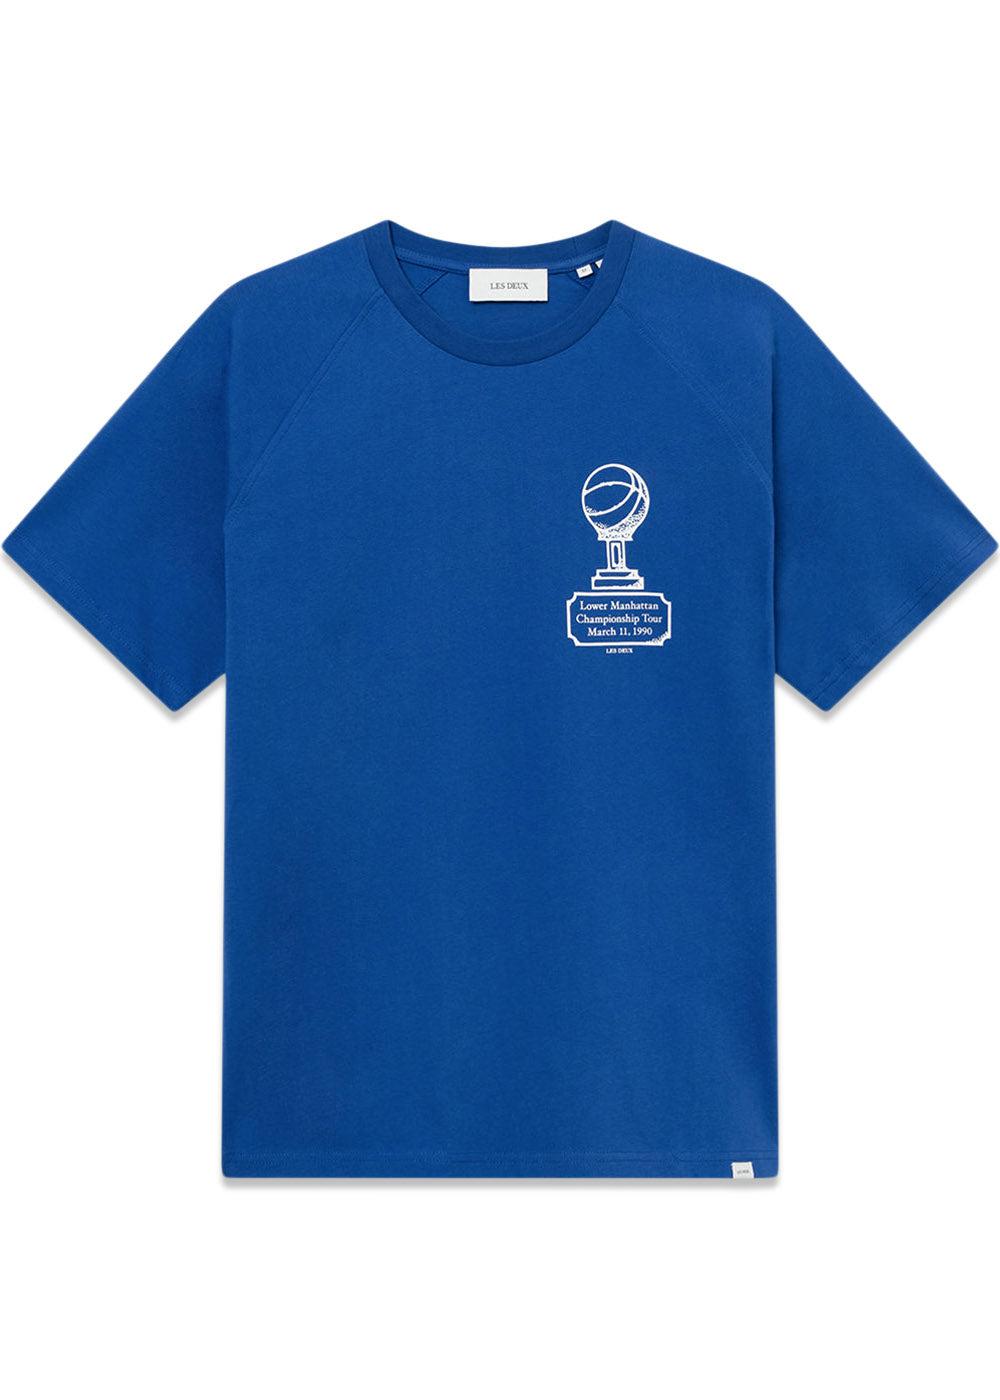 Tournament T-Shirt - Surf Blue/White